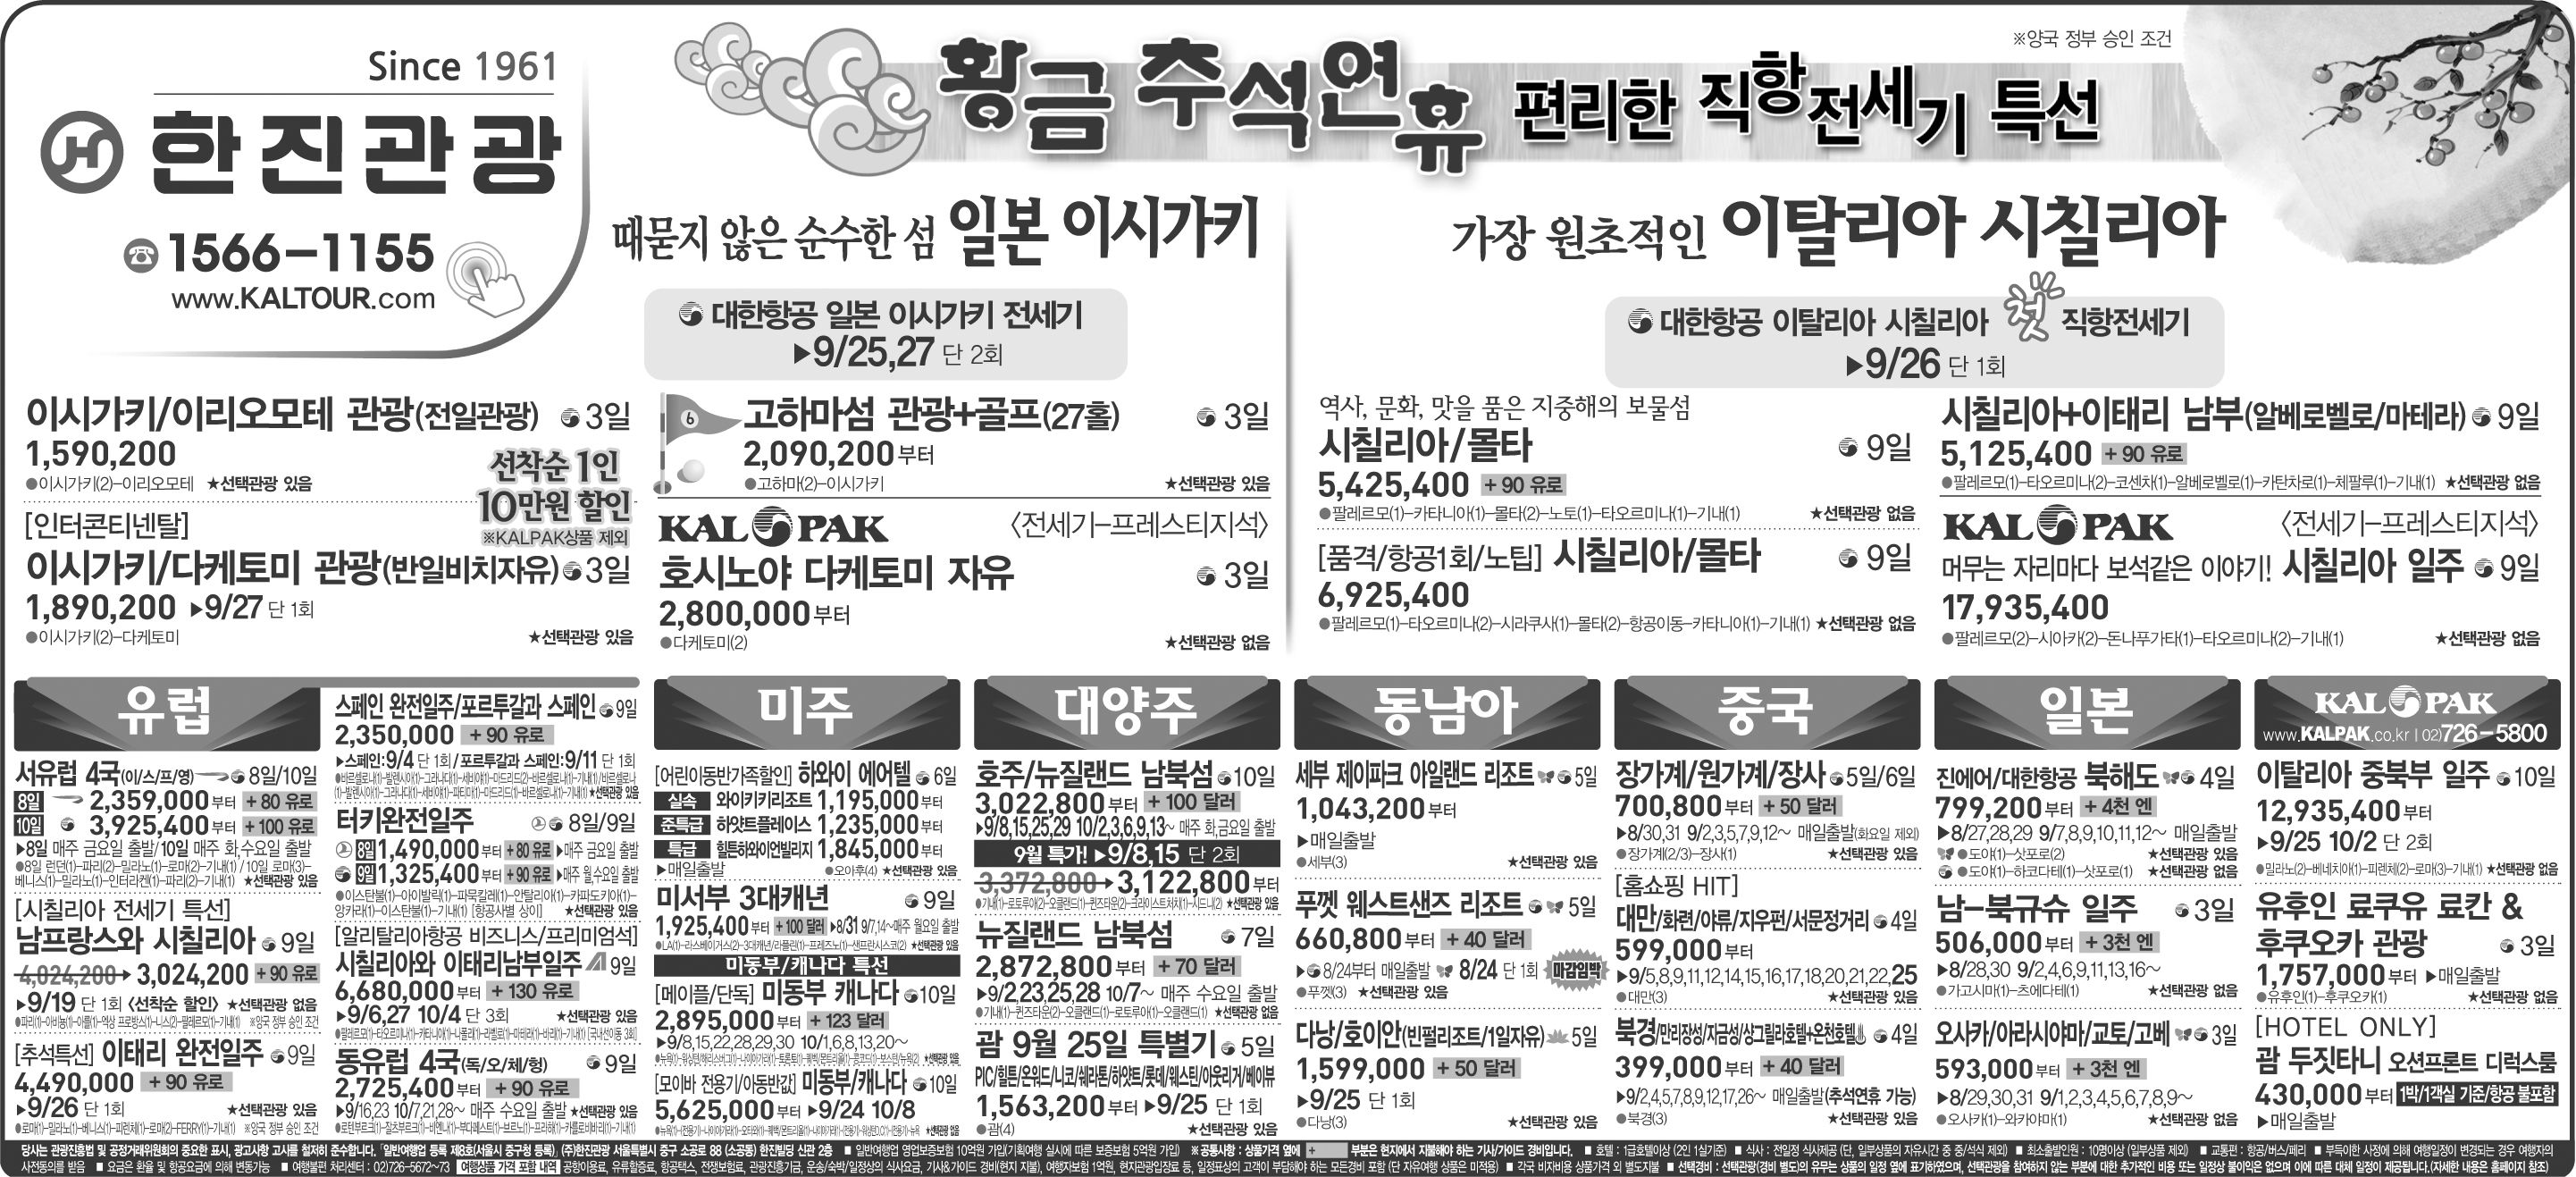 조선일보 [2015.08.17 월요일]